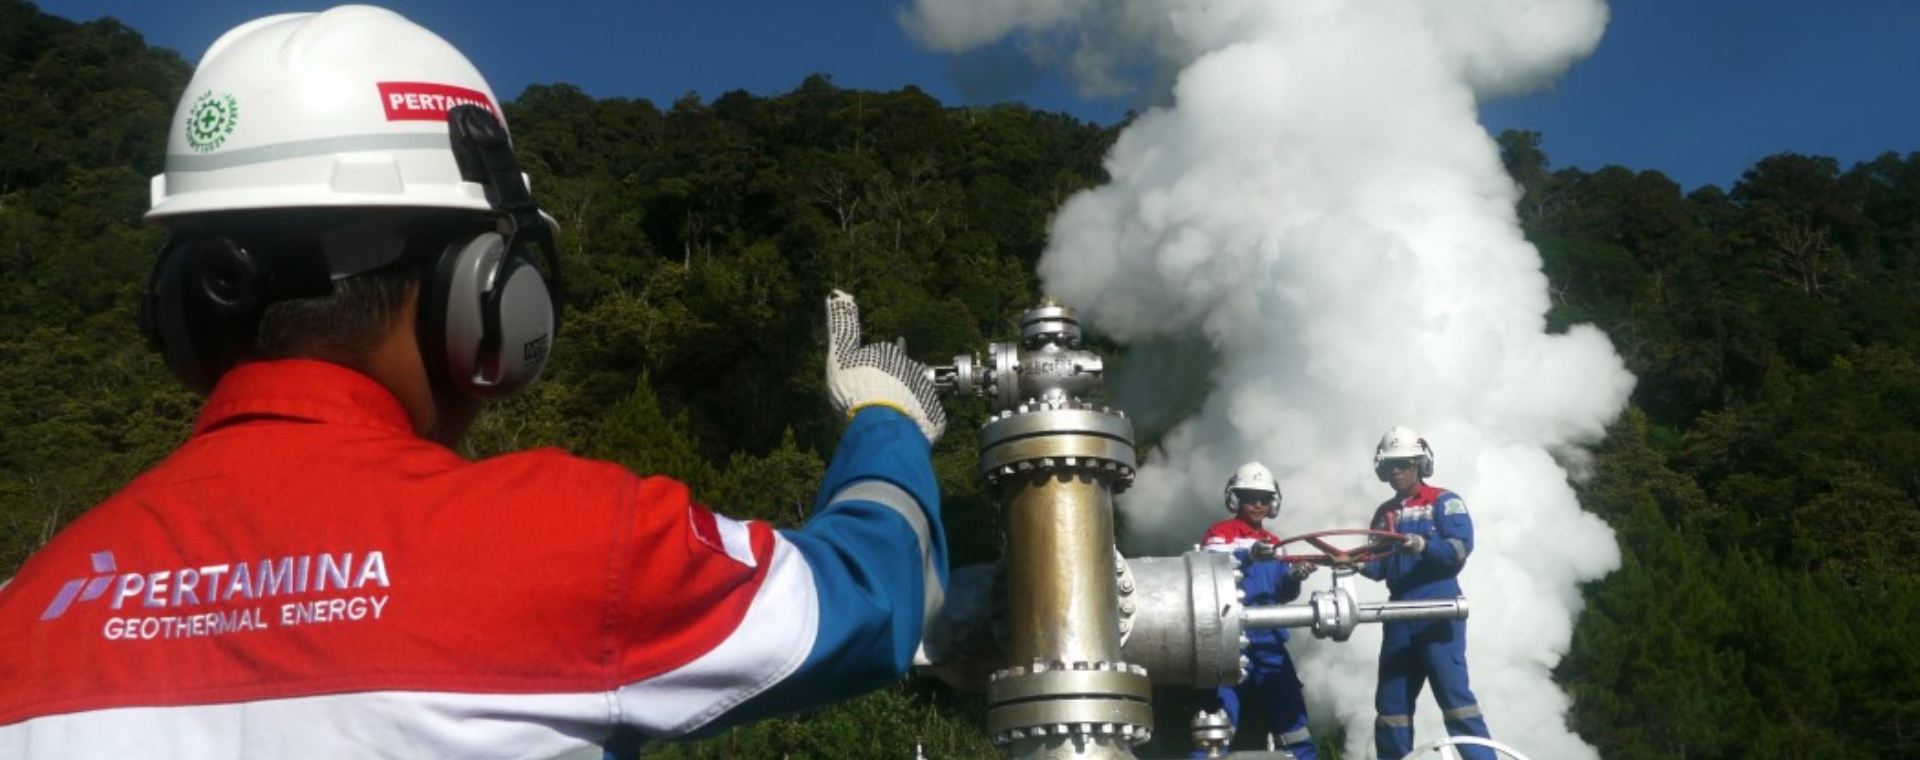  IPO Pertamina Geothermal Energy (PGE) dan Sokongan Pendanaan Bank Dunia